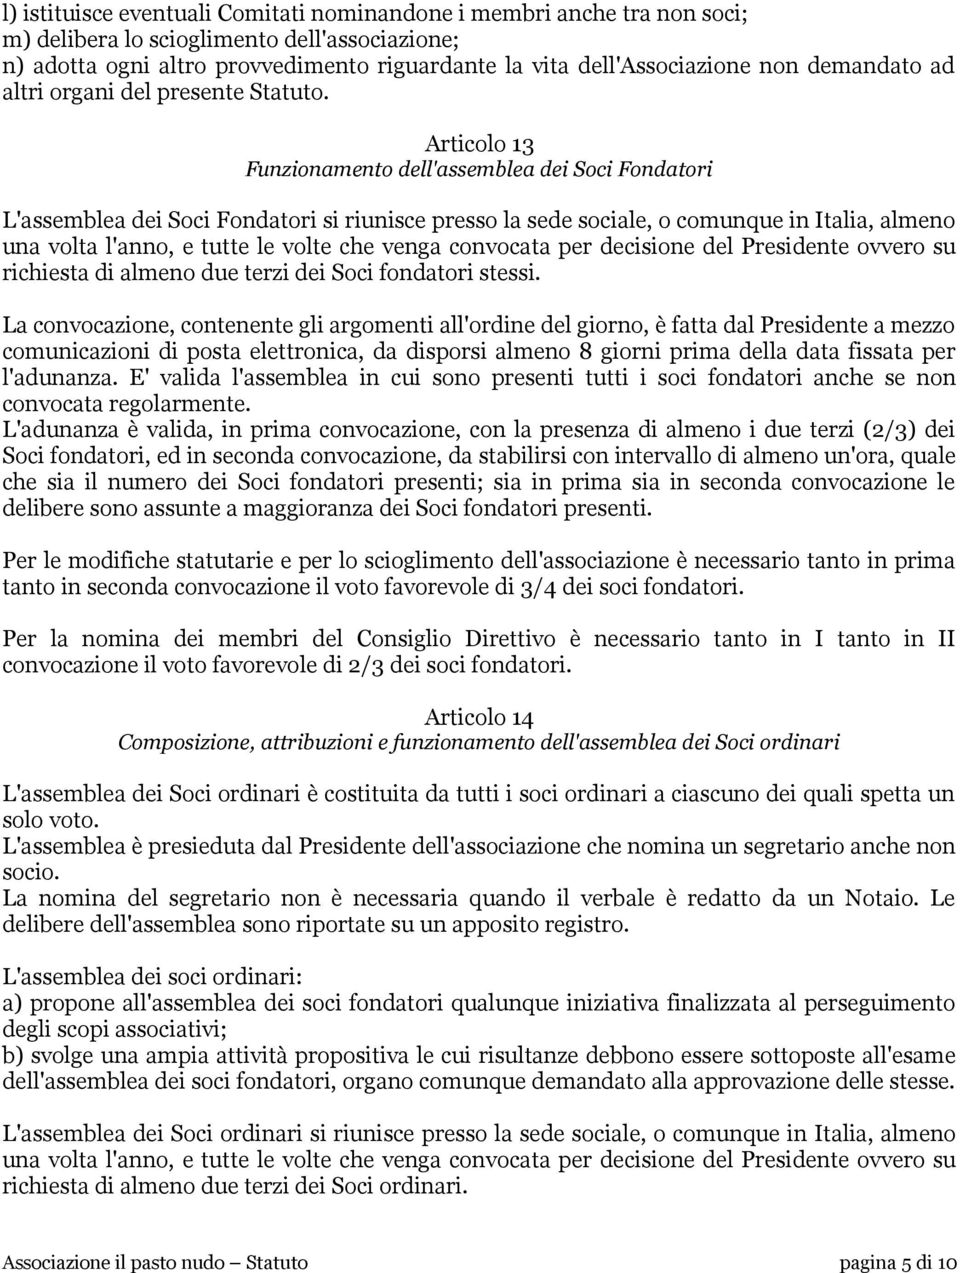 Articolo 13 Funzionamento dell'assemblea dei Soci Fondatori L'assemblea dei Soci Fondatori si riunisce presso la sede sociale, o comunque in Italia, almeno una volta l'anno, e tutte le volte che